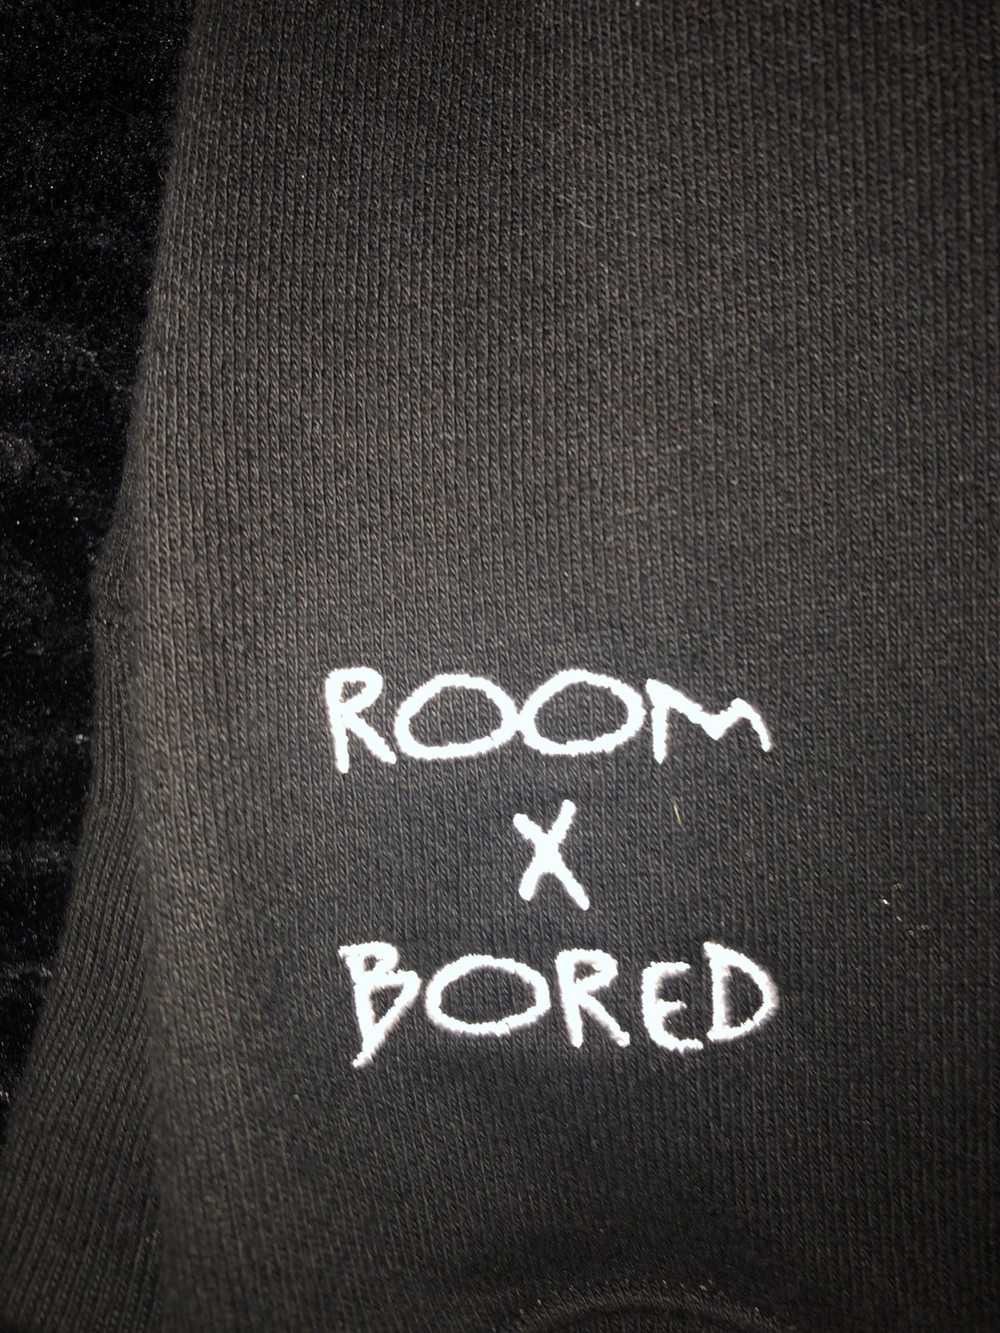 Custom RoomxBored Temptations hoodie - image 2